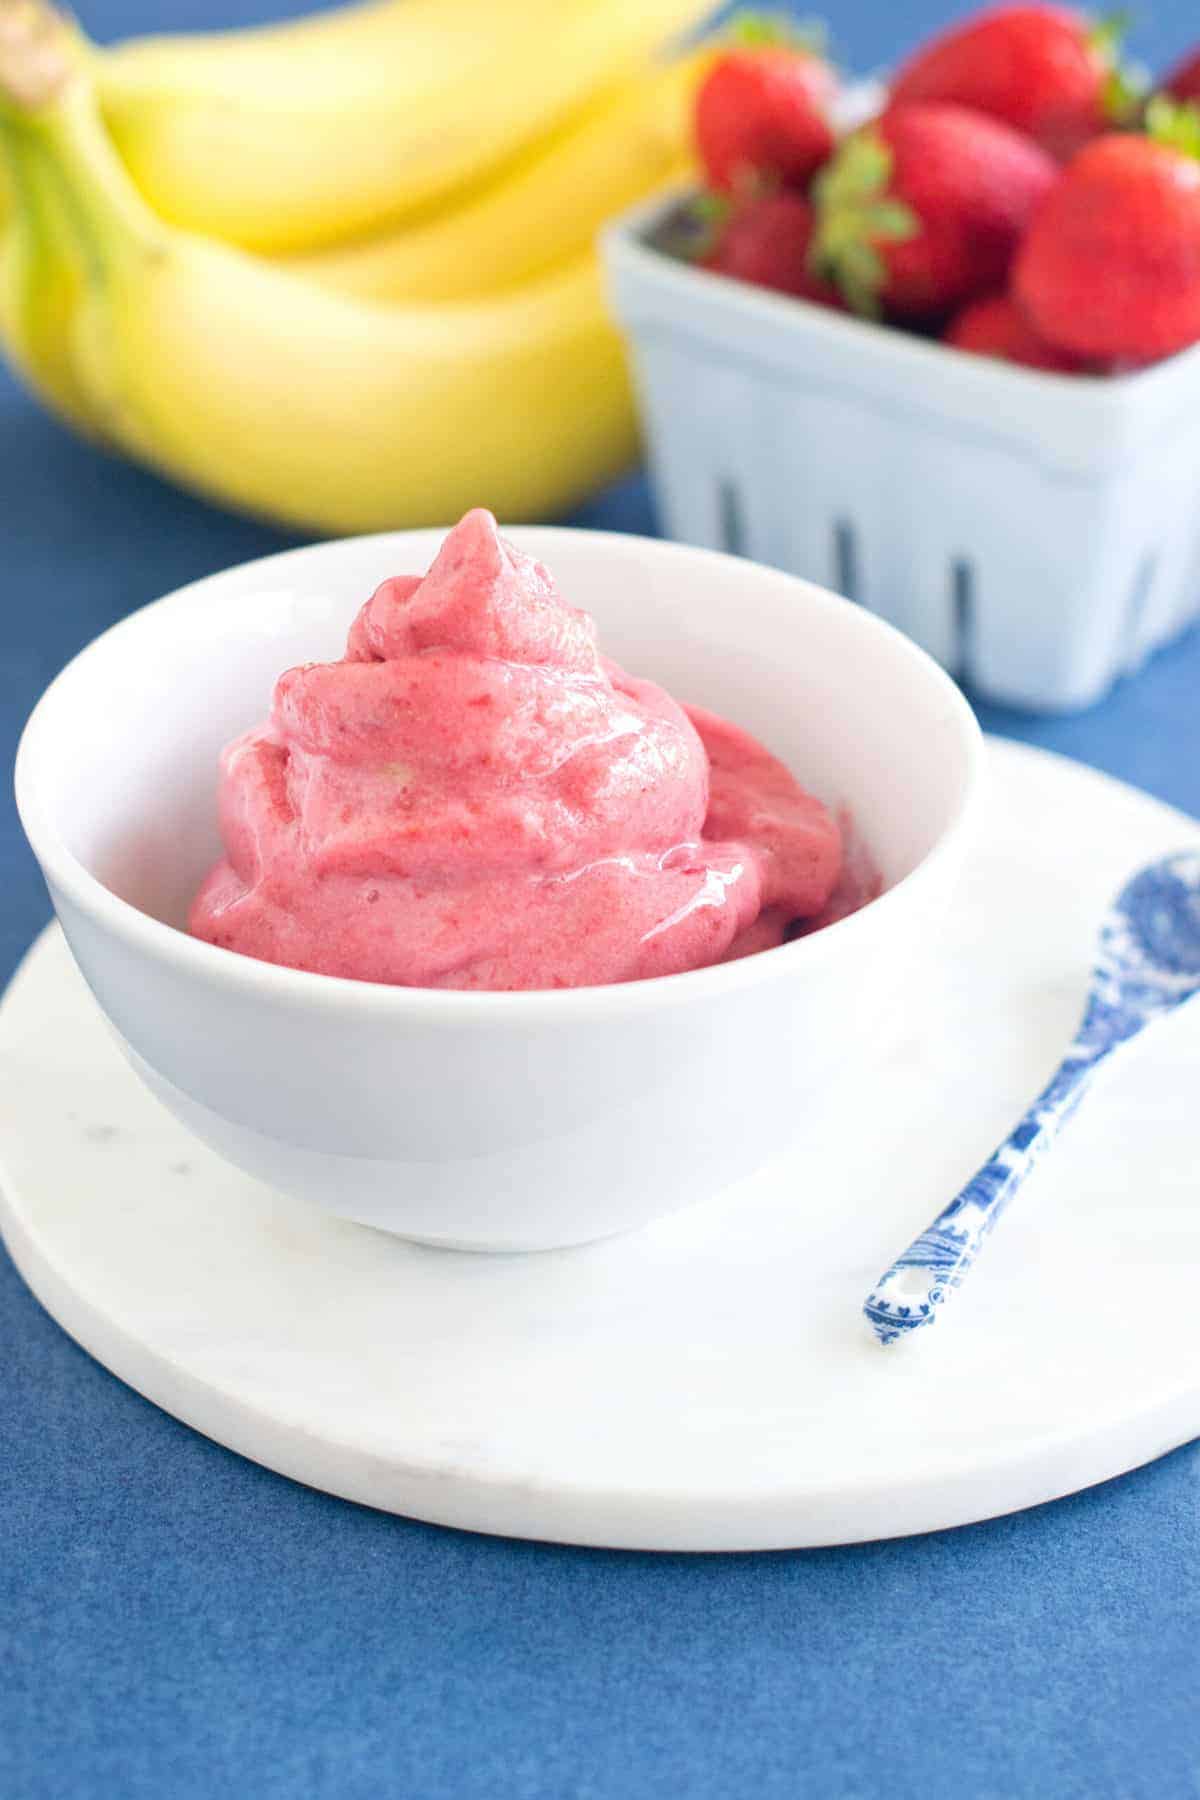 How to make Strawberry Banana Ice Cream